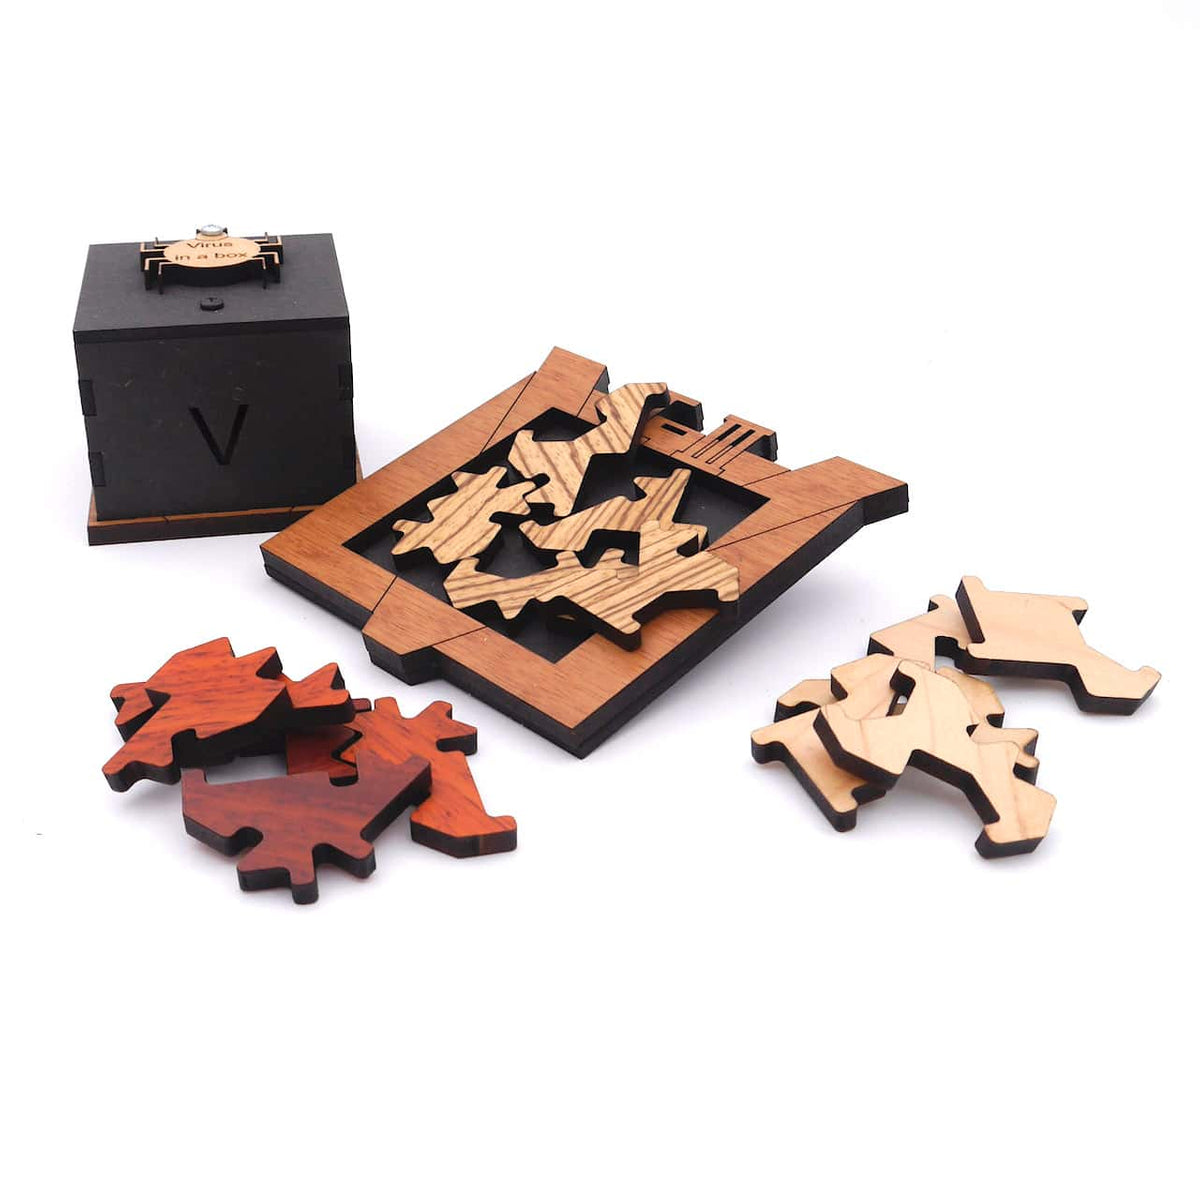 VIRUS IN A BOX - 3 Legepuzzle in einem Spiel